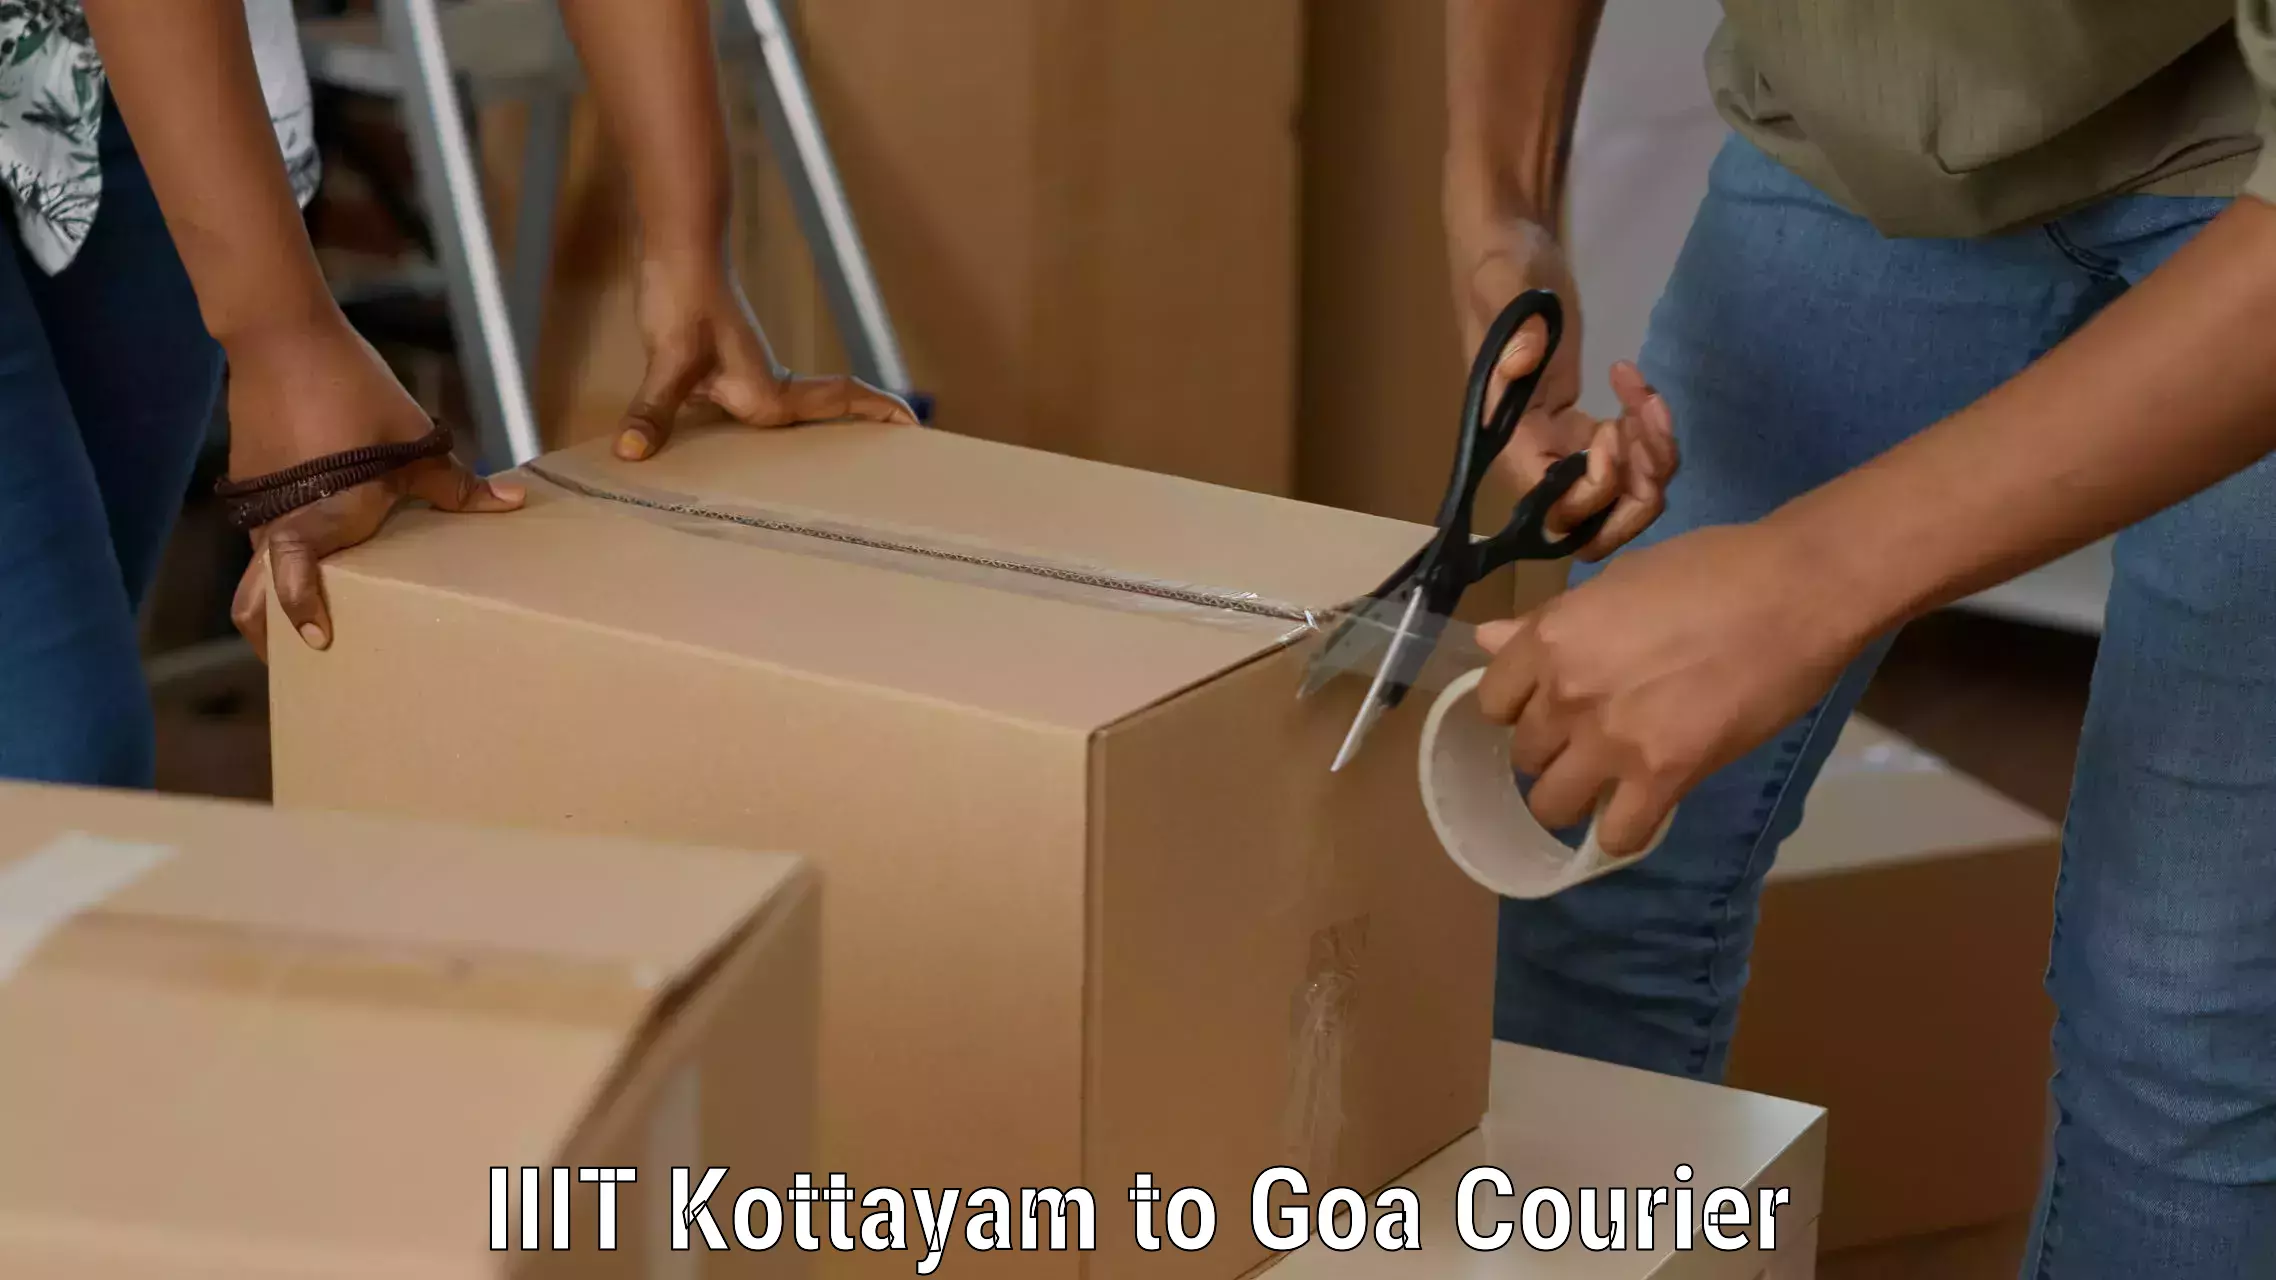 Multi-carrier shipping IIIT Kottayam to IIT Goa